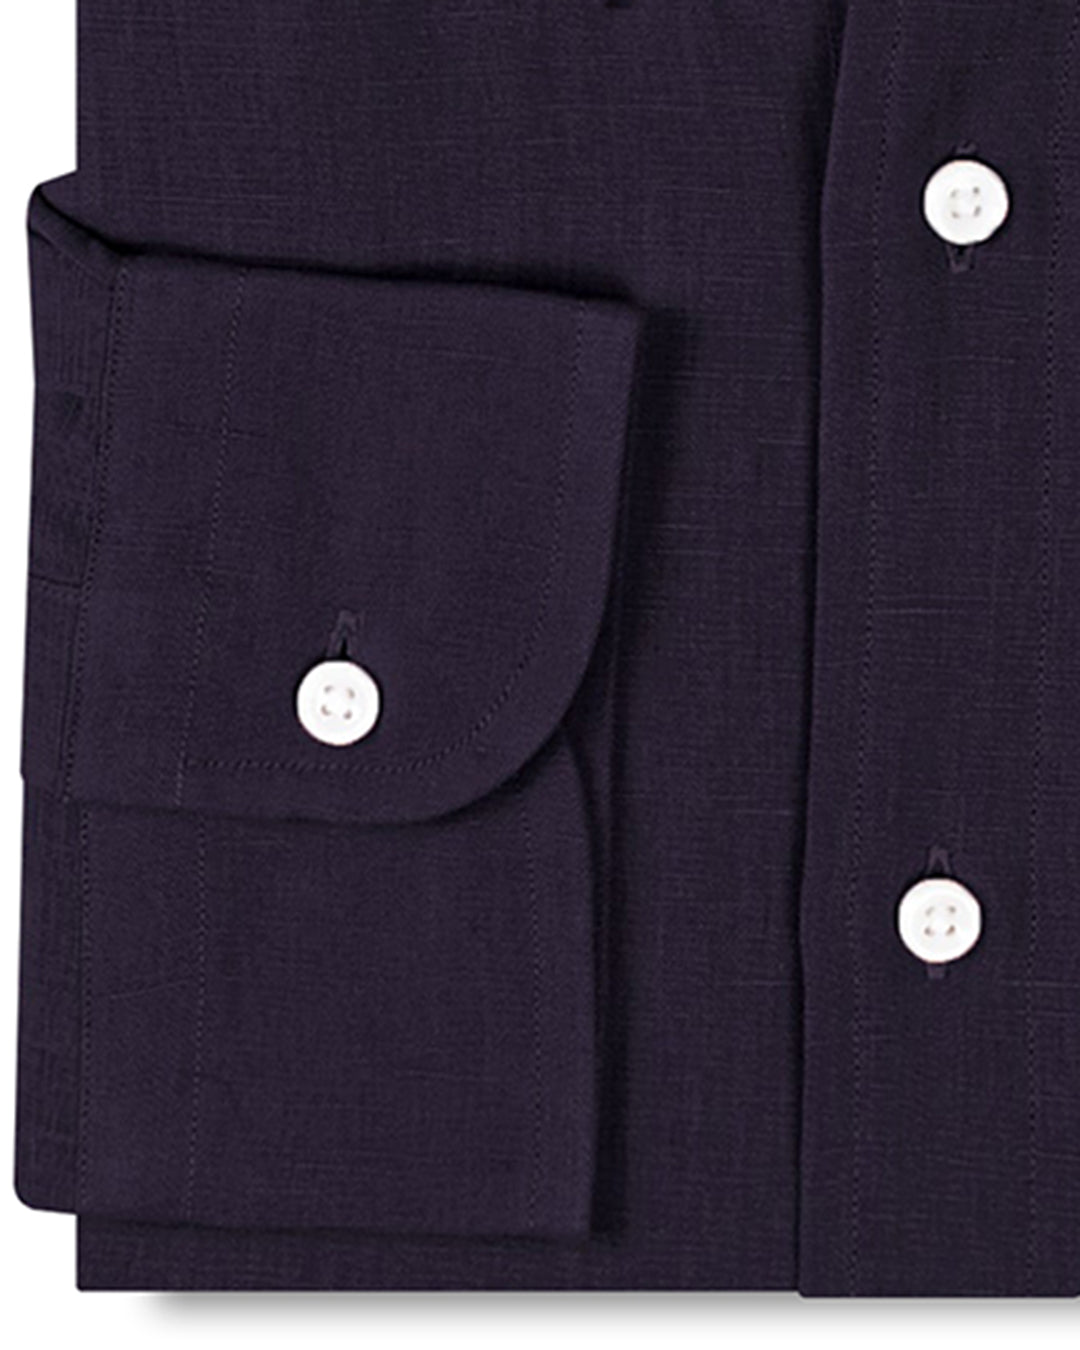 Cotton-Linen: Dark Purple